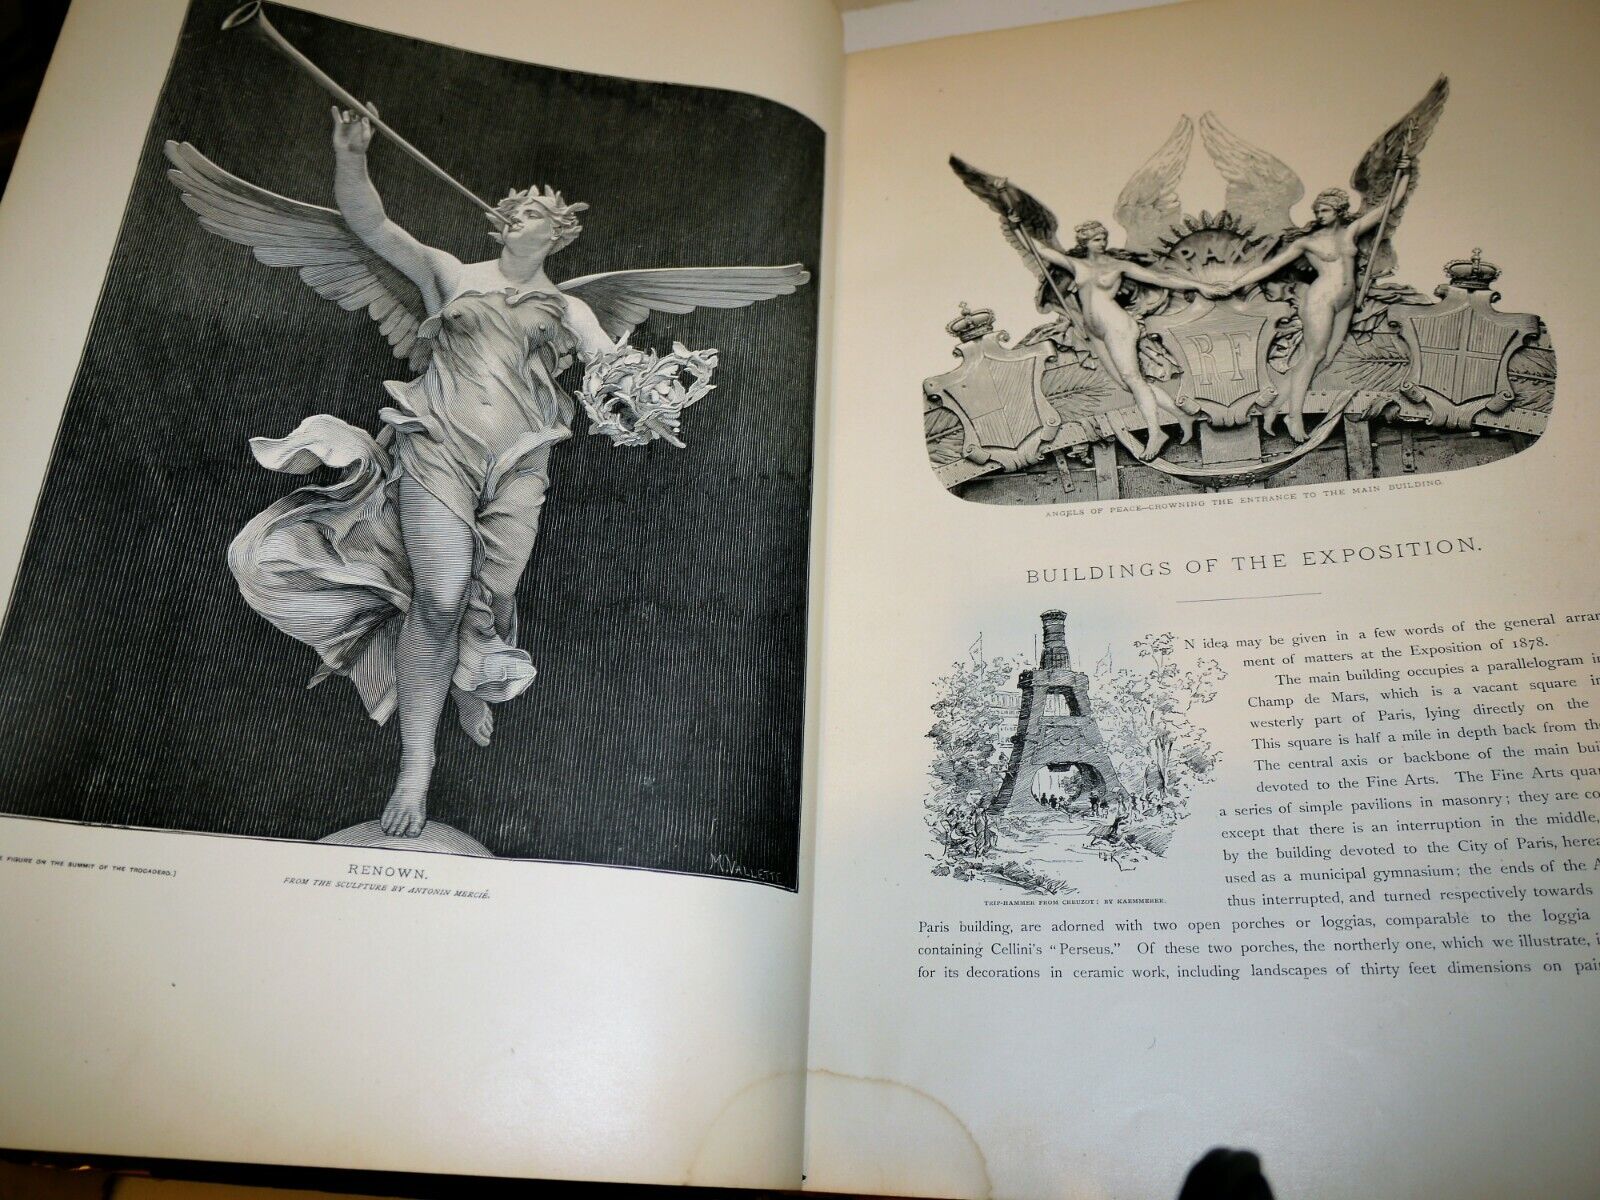 Paris 1878 Chefs-D'Oeuvre D'Art (Prints Book) of the International Exhibition